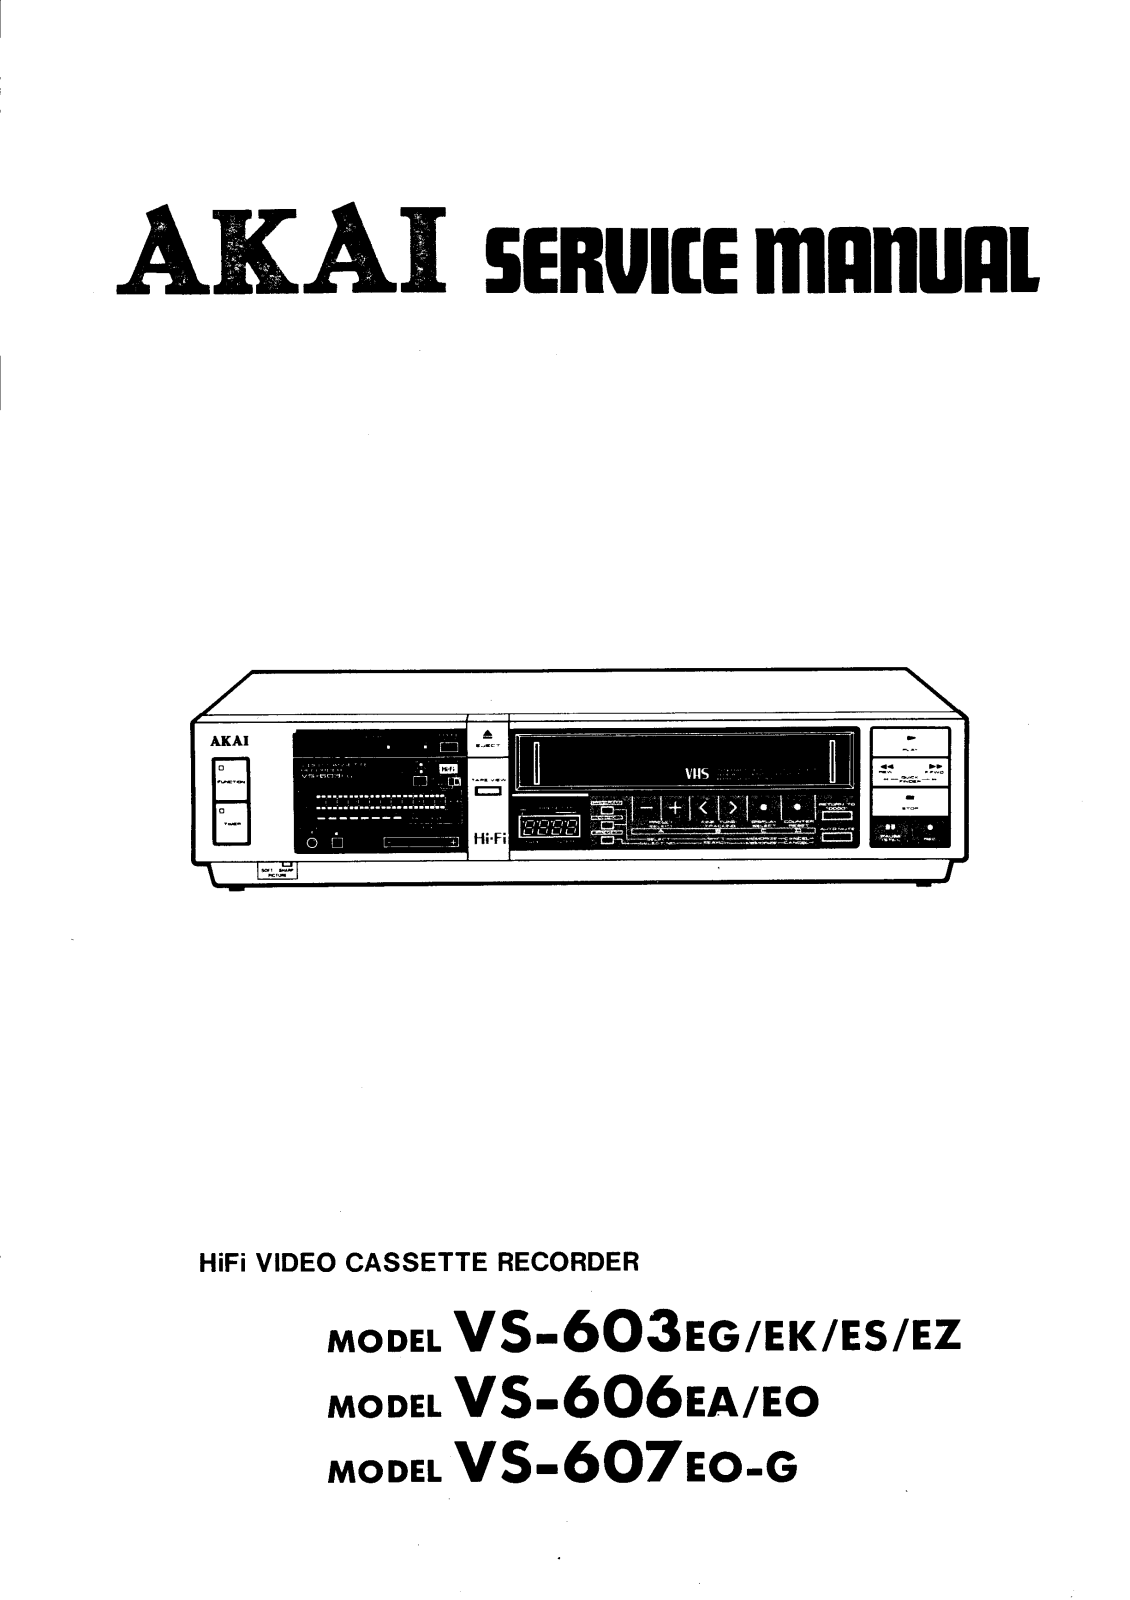 Akai vs-603, vs-606, vs-607 Service Manual